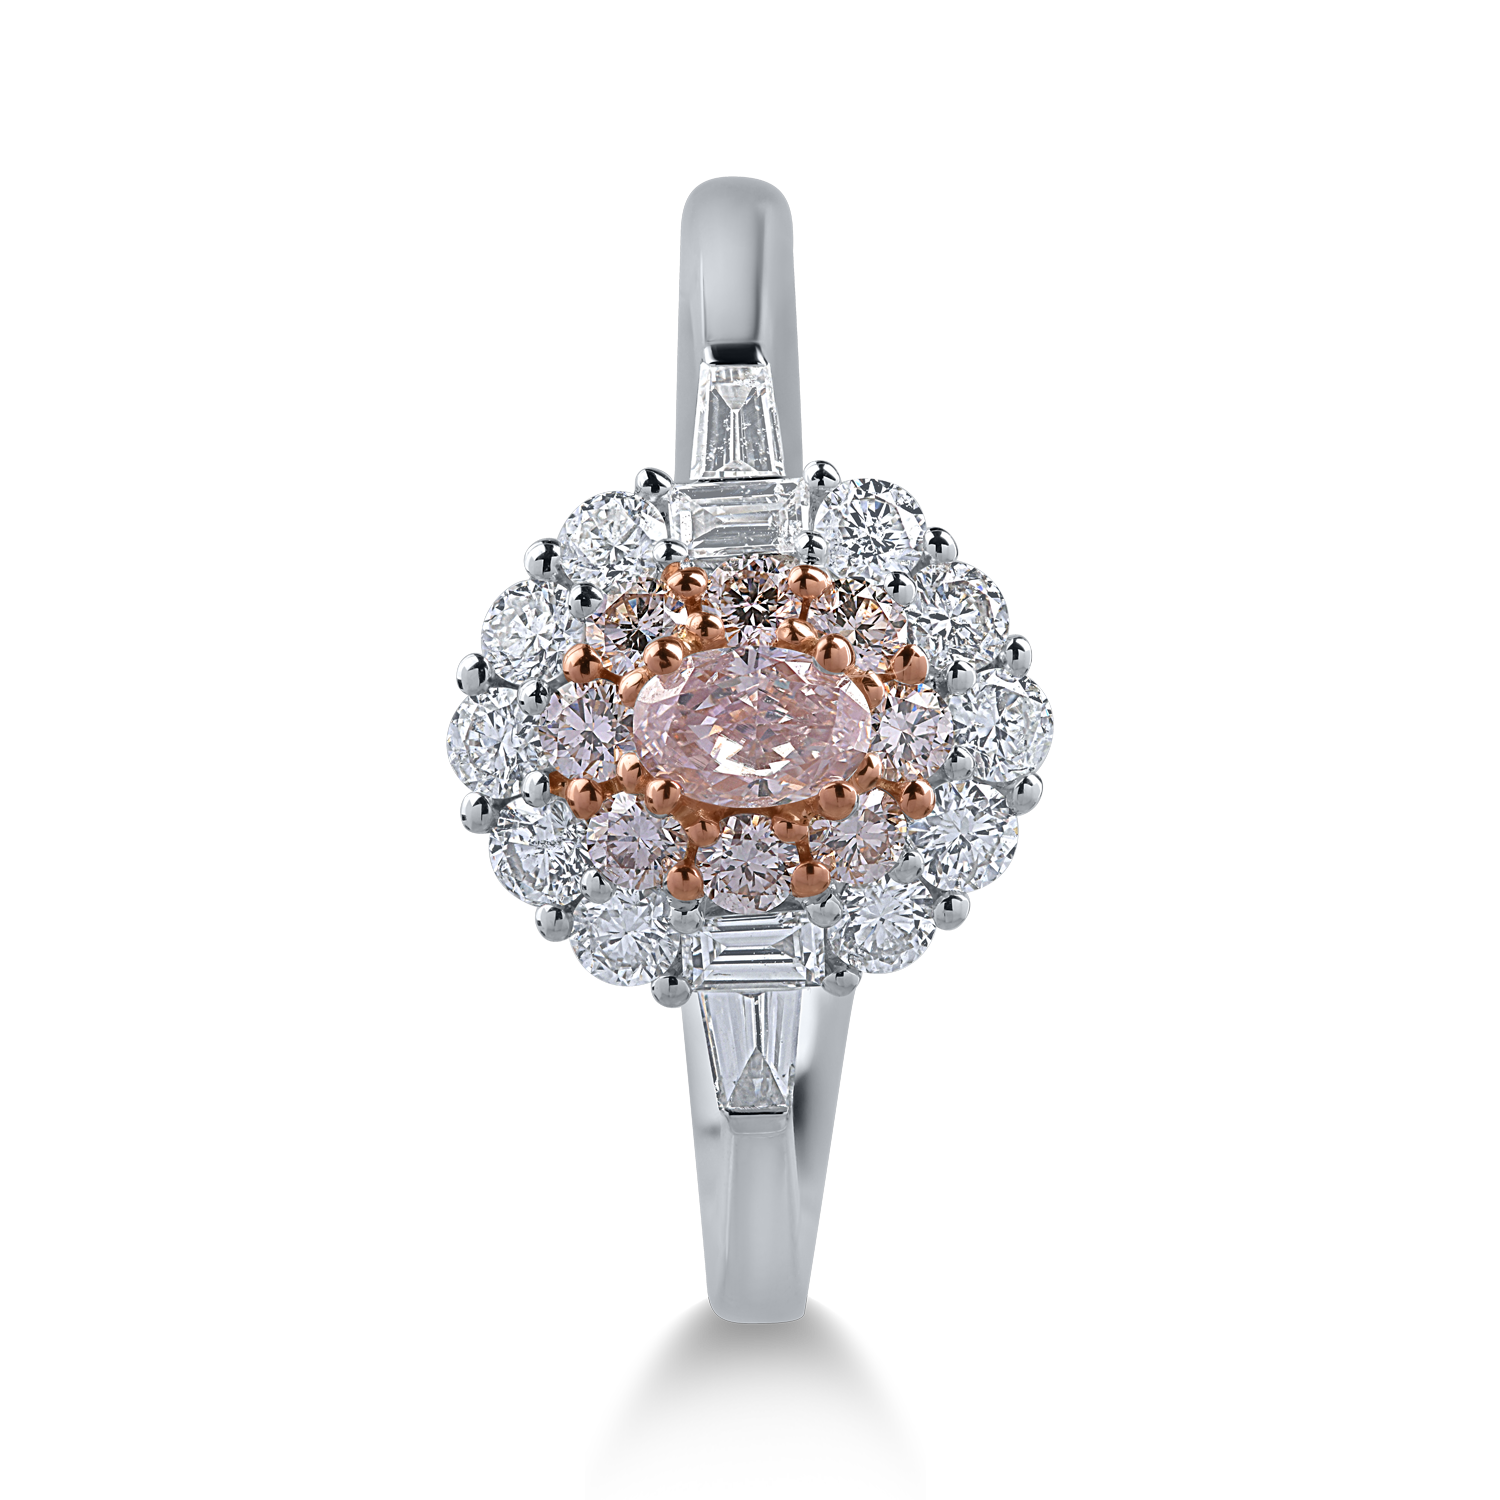 Inel din aur alb-roz cu diamante transparente de 0.5ct si diamante roz de 0.4ct